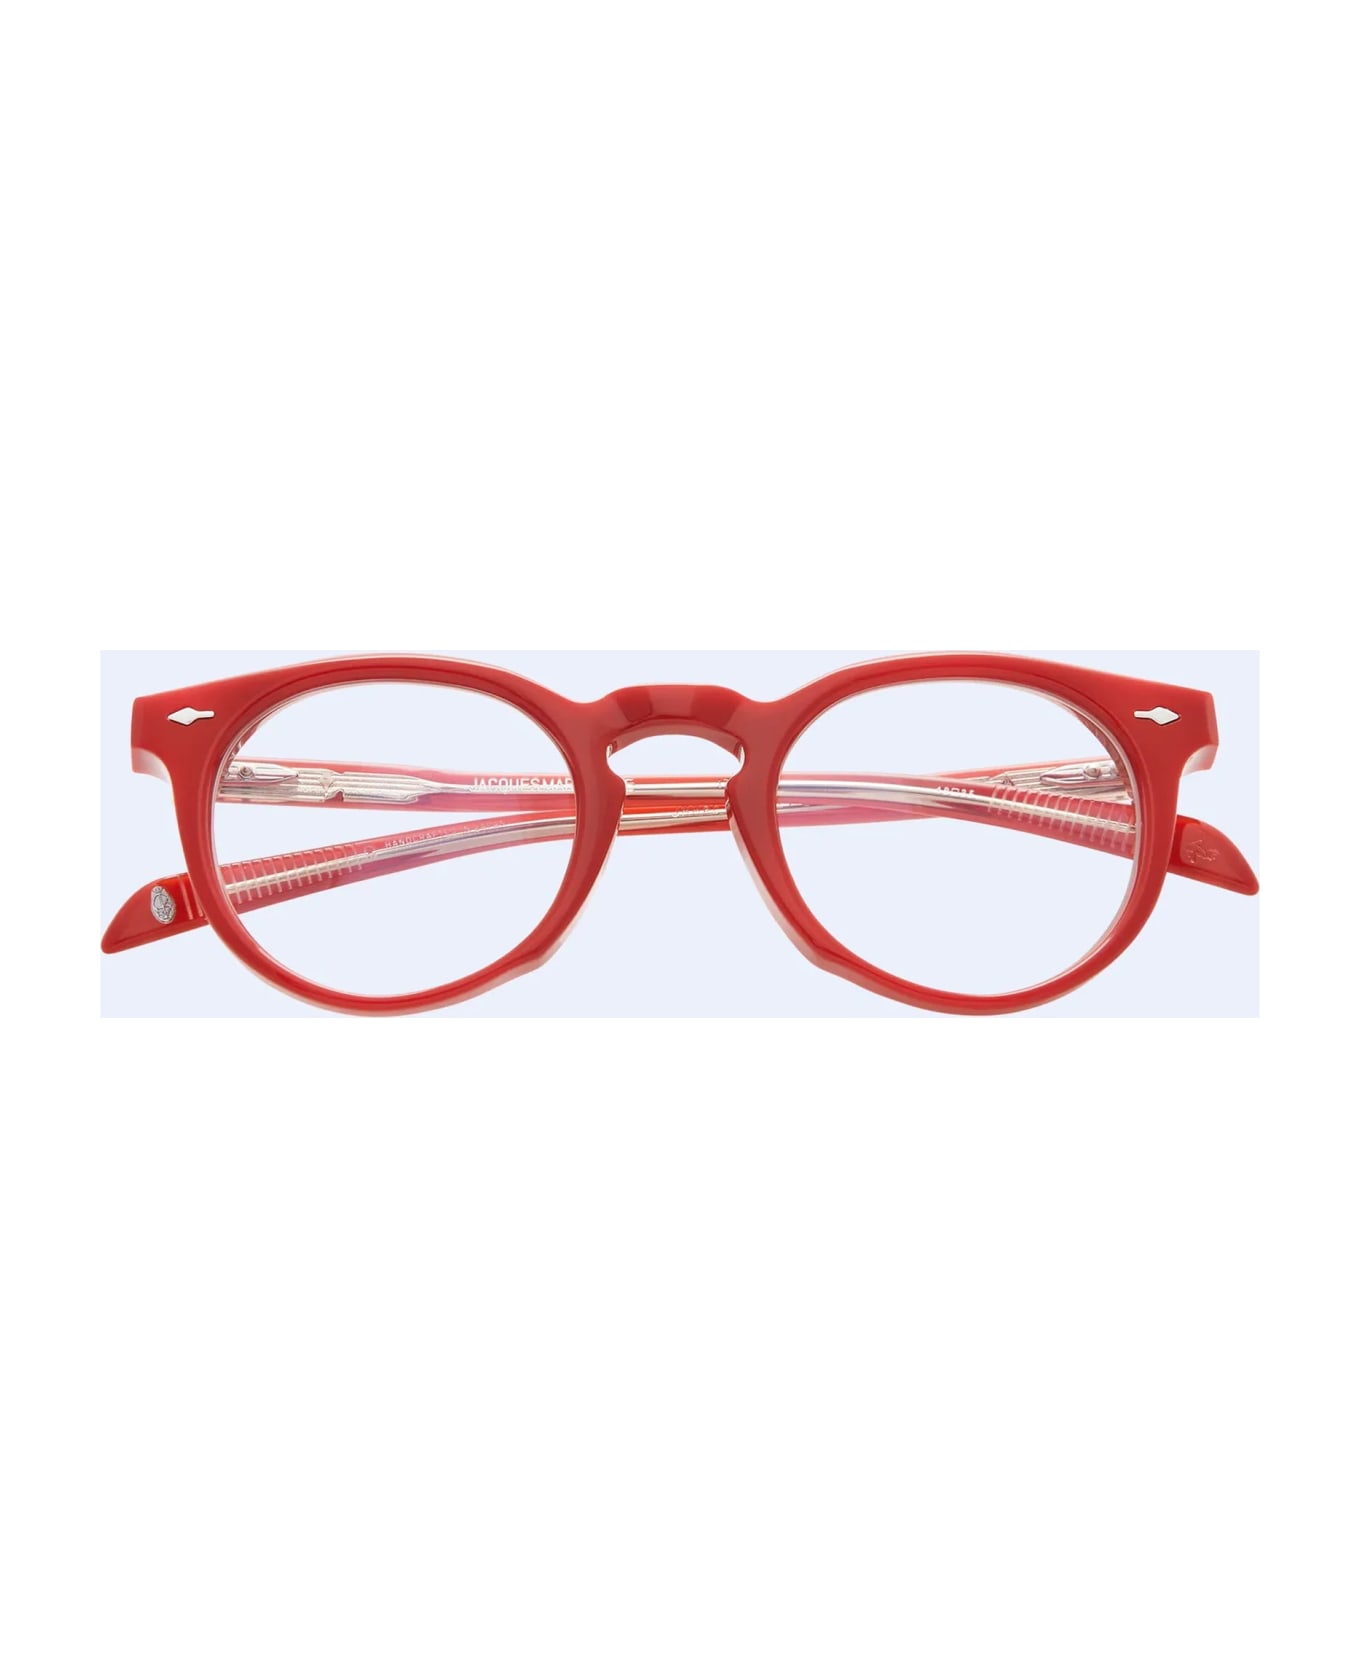 Jacques Marie Mage Percier - Vermillion Glasses - red